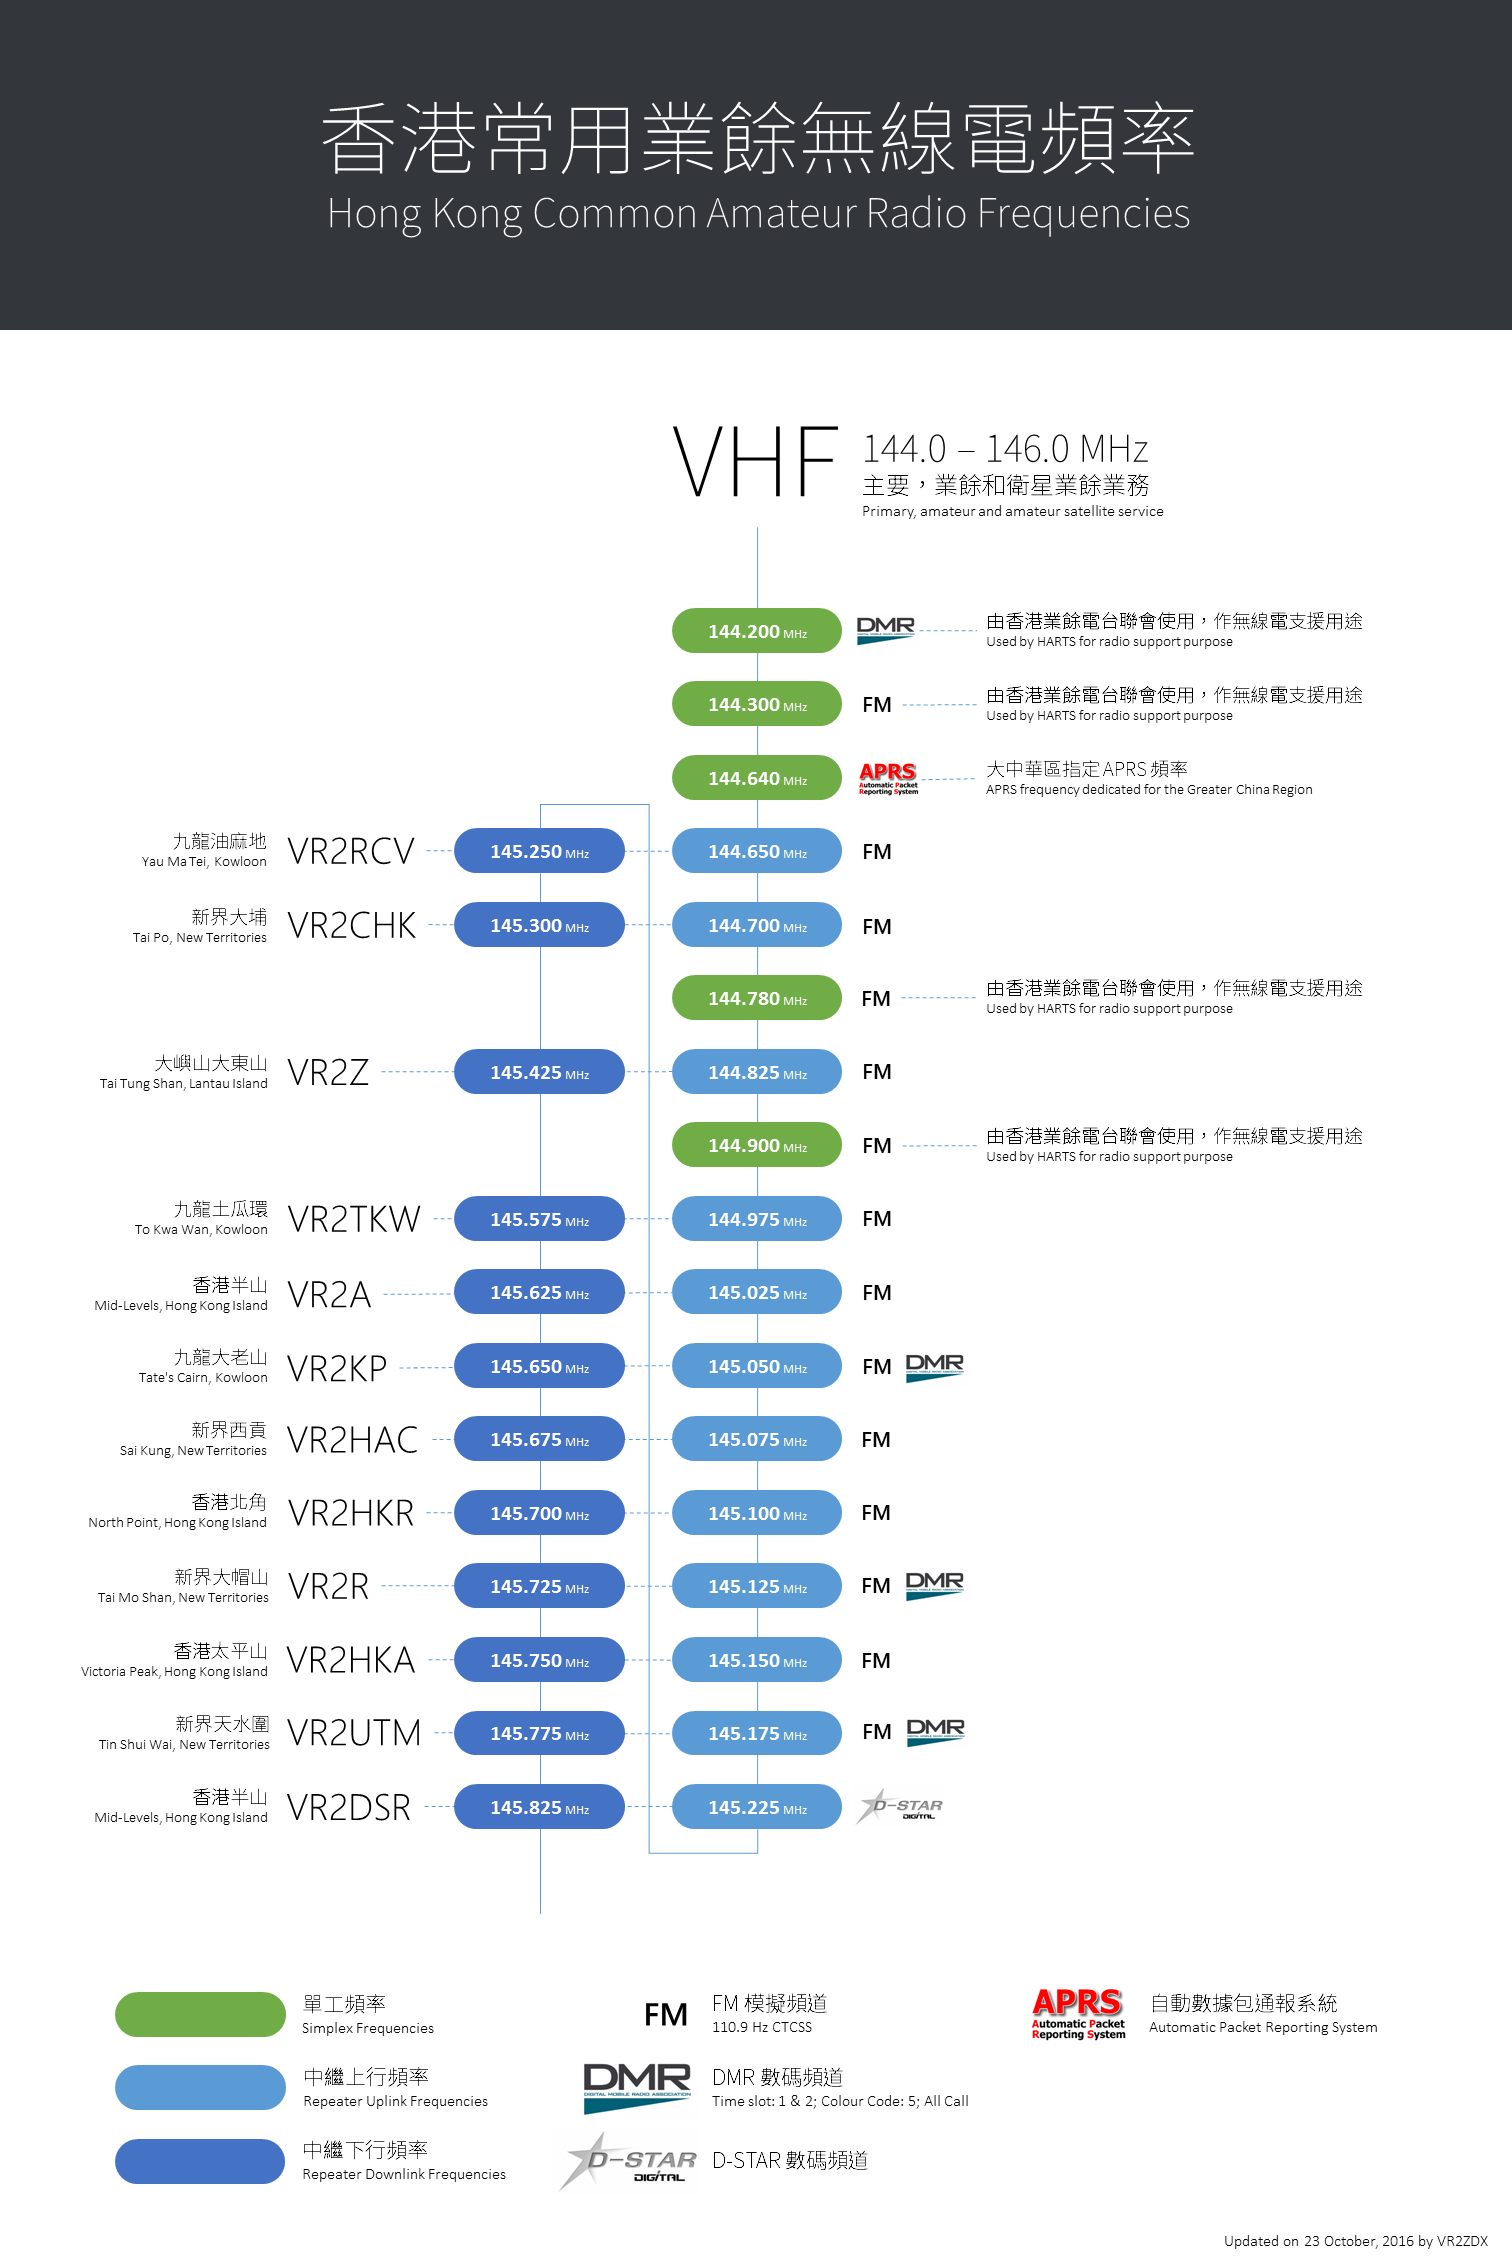 Hong Kong Common Amateur Radio Frequencies - VHF